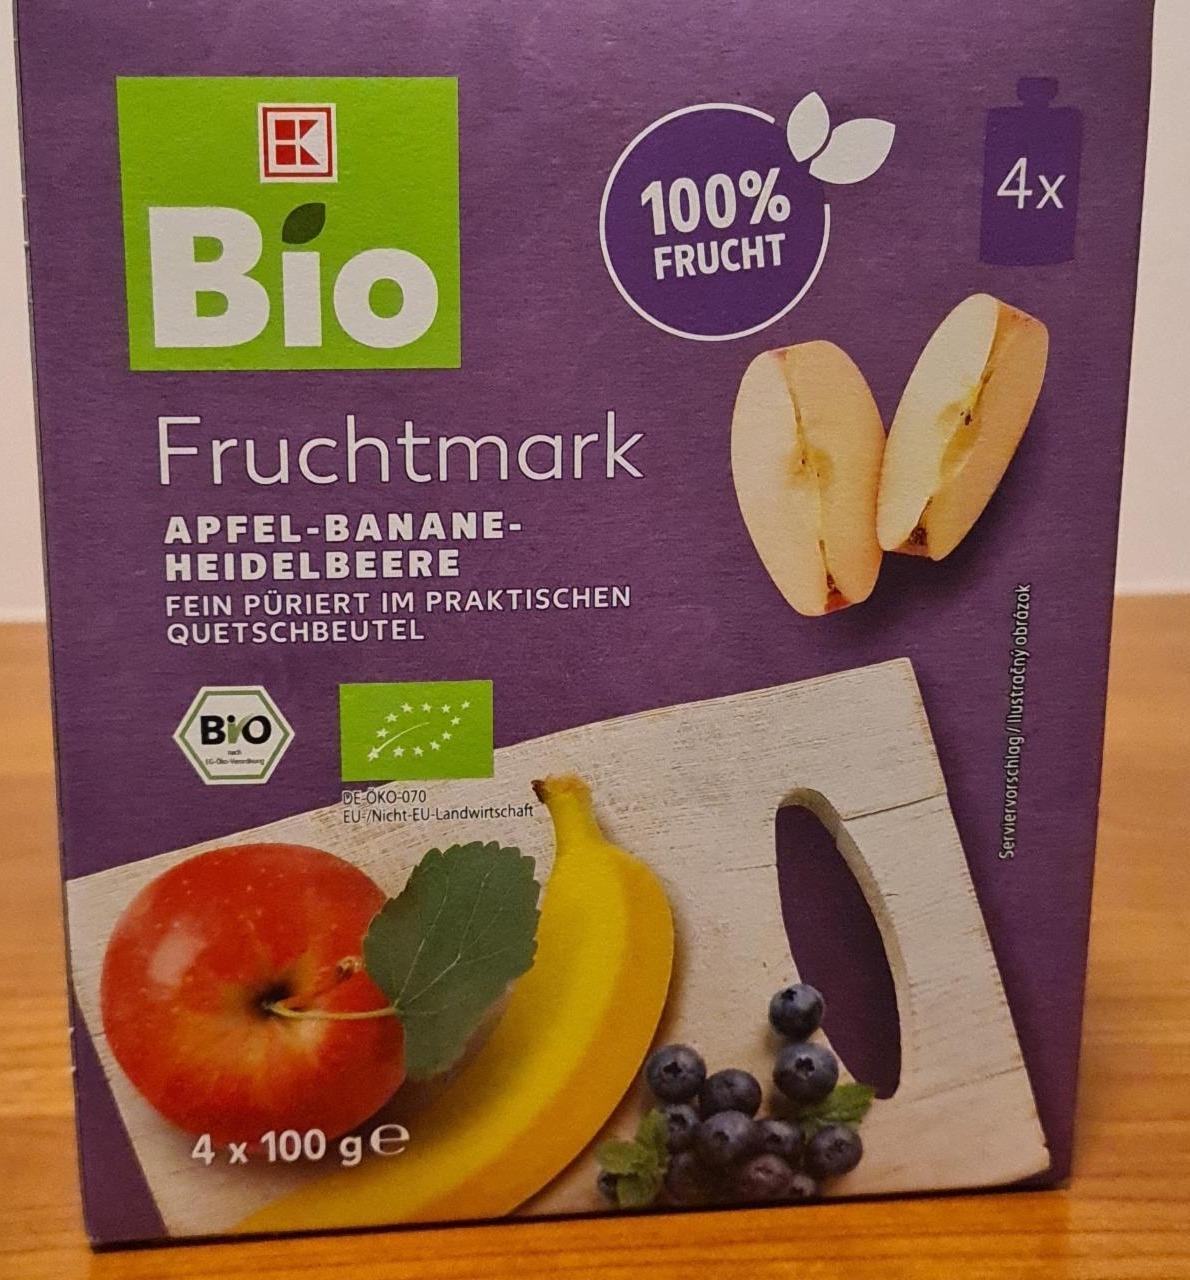 Fotografie - Fruchtmark apfel-banane-heidelbeere K-Bio